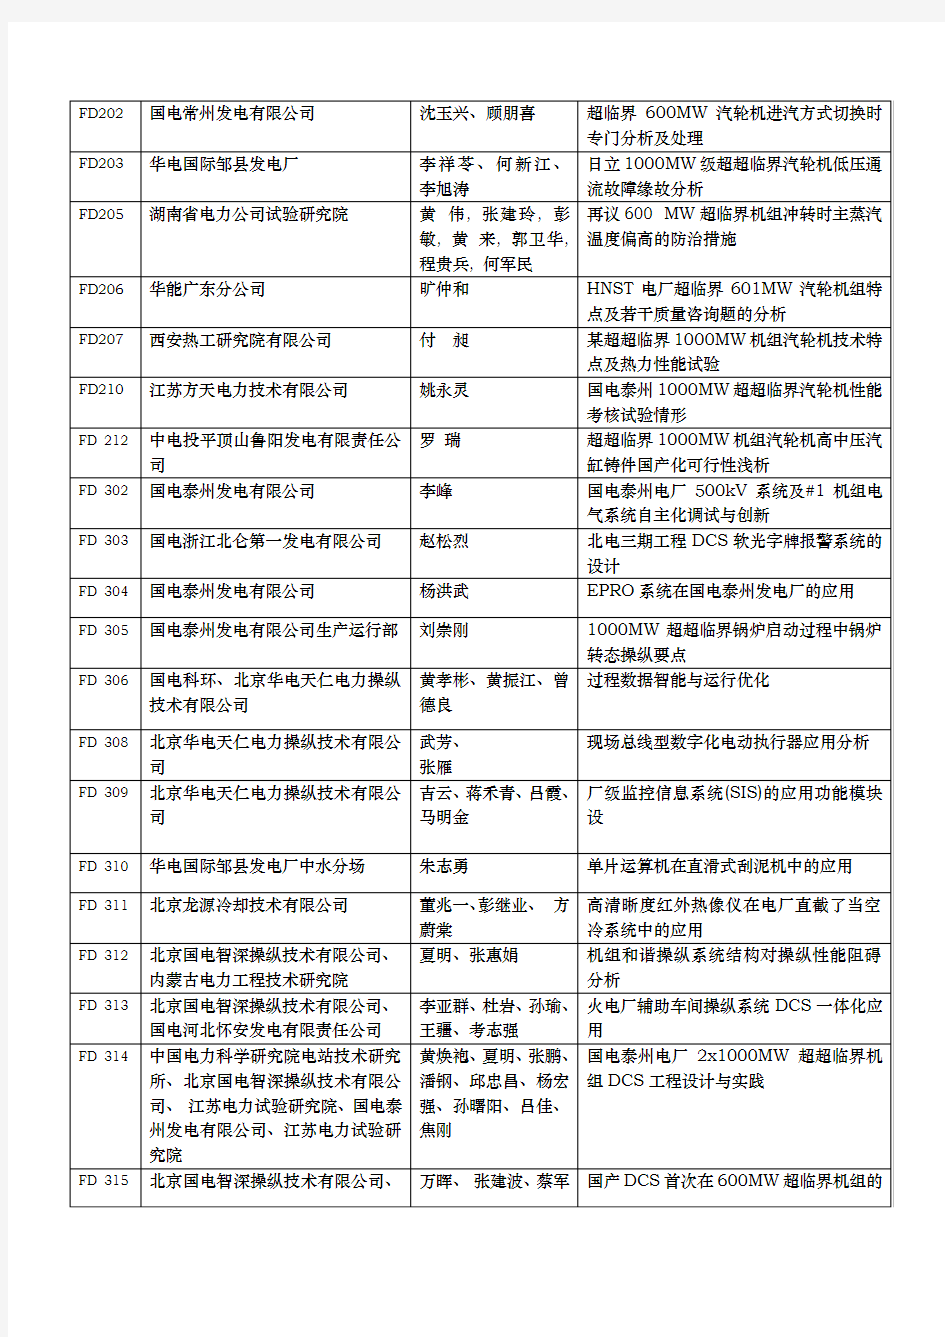 中国国电高效燃烧论文统计情况表